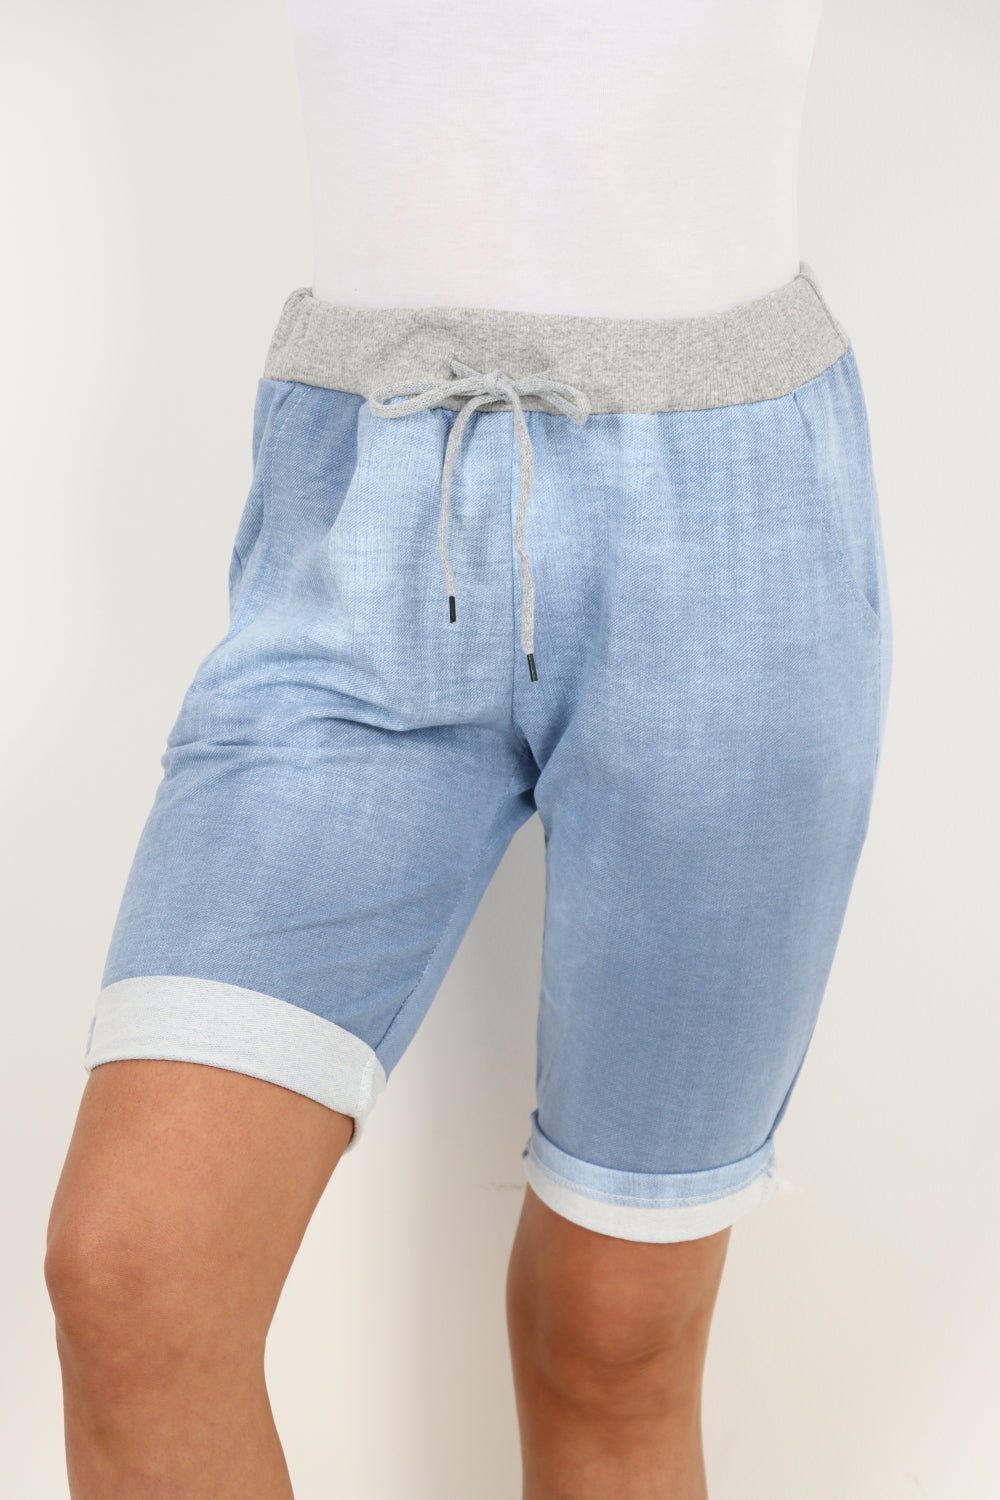 Printed Joggers Shorts